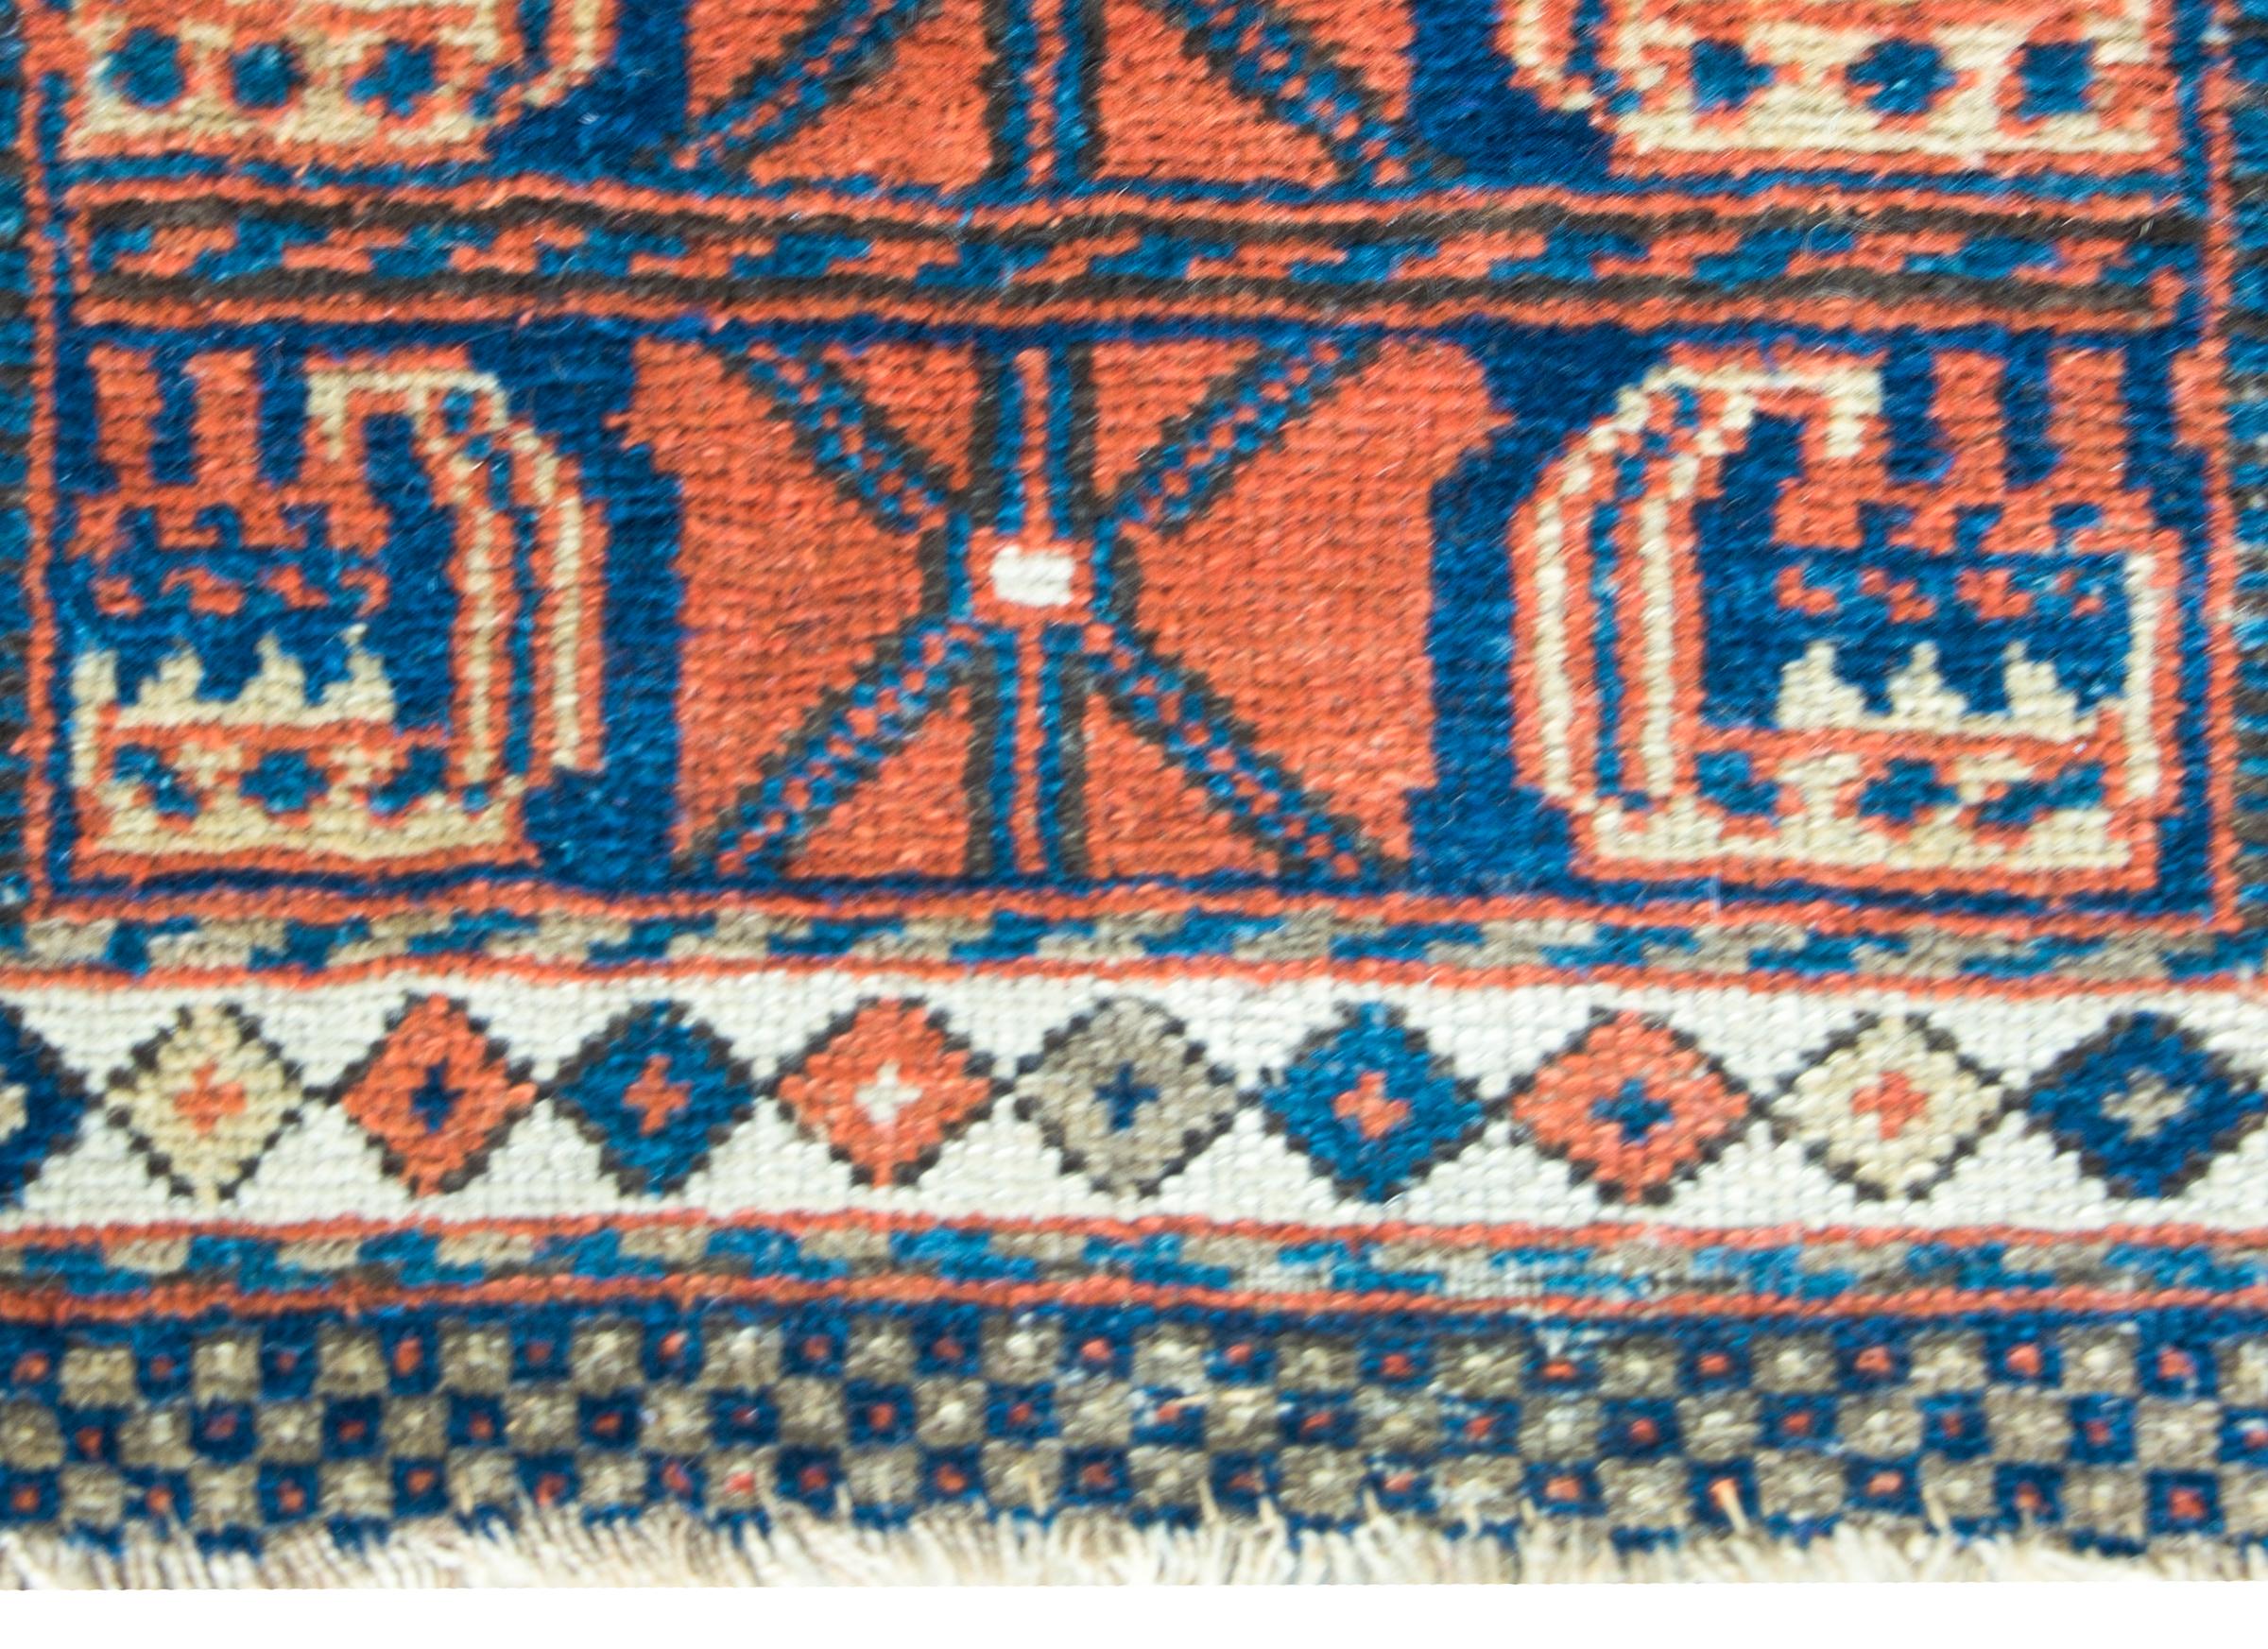 Magnifique tapis kurde du début du XXe siècle à face de sac, dont le motif simple mais moderne contient deux grandes fleurs et feuilles stylisées de couleur cramoisie sur fond indigo.  La bordure est simple et présente un petit motif en losange.